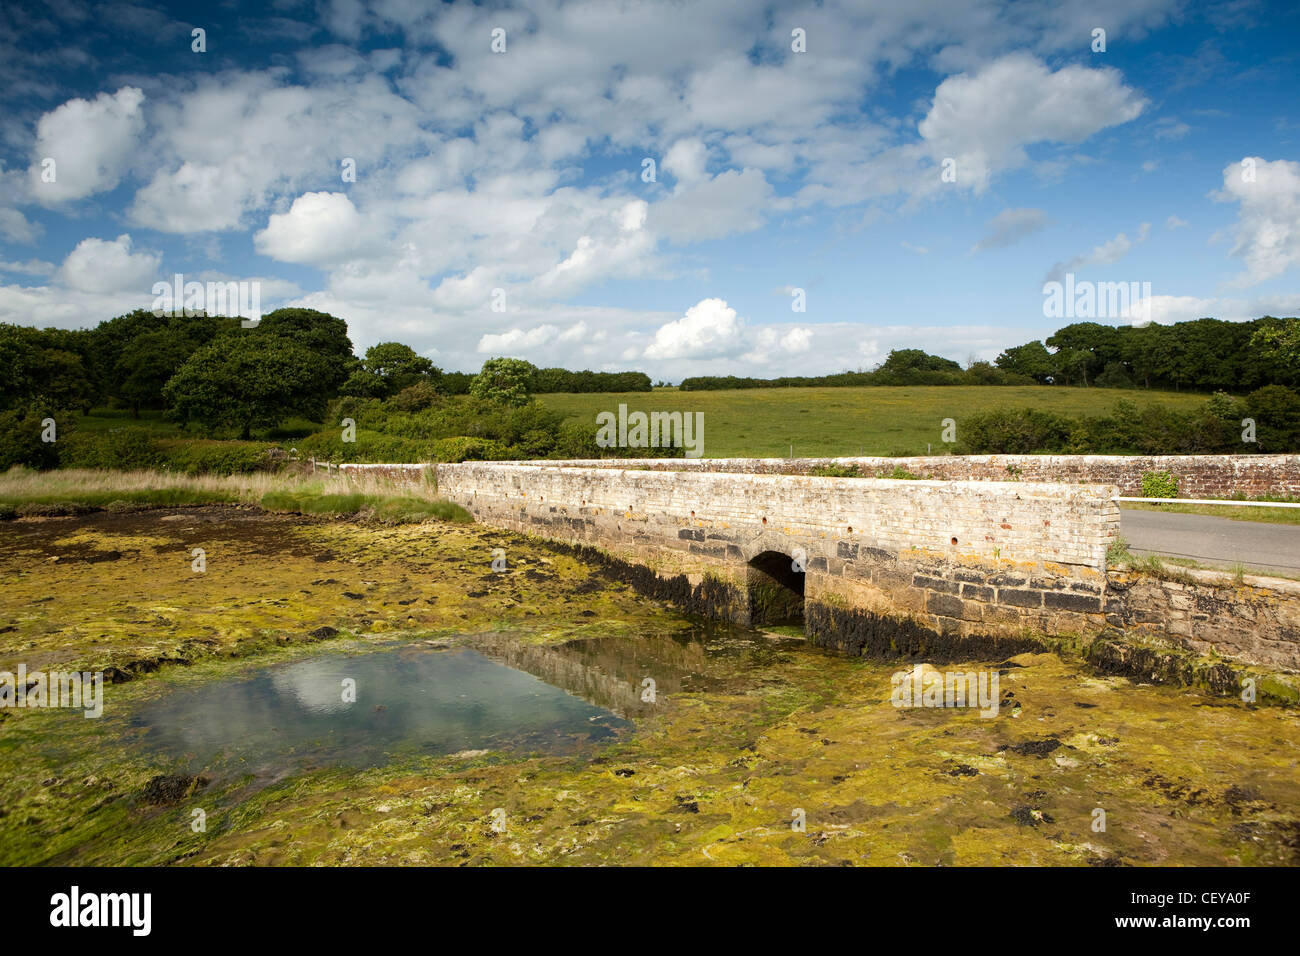 Großbritannien, England, Isle of Wight, Newtown, alte Damm Überbrückung Gezeiten Newtown-Fluss Stockfoto